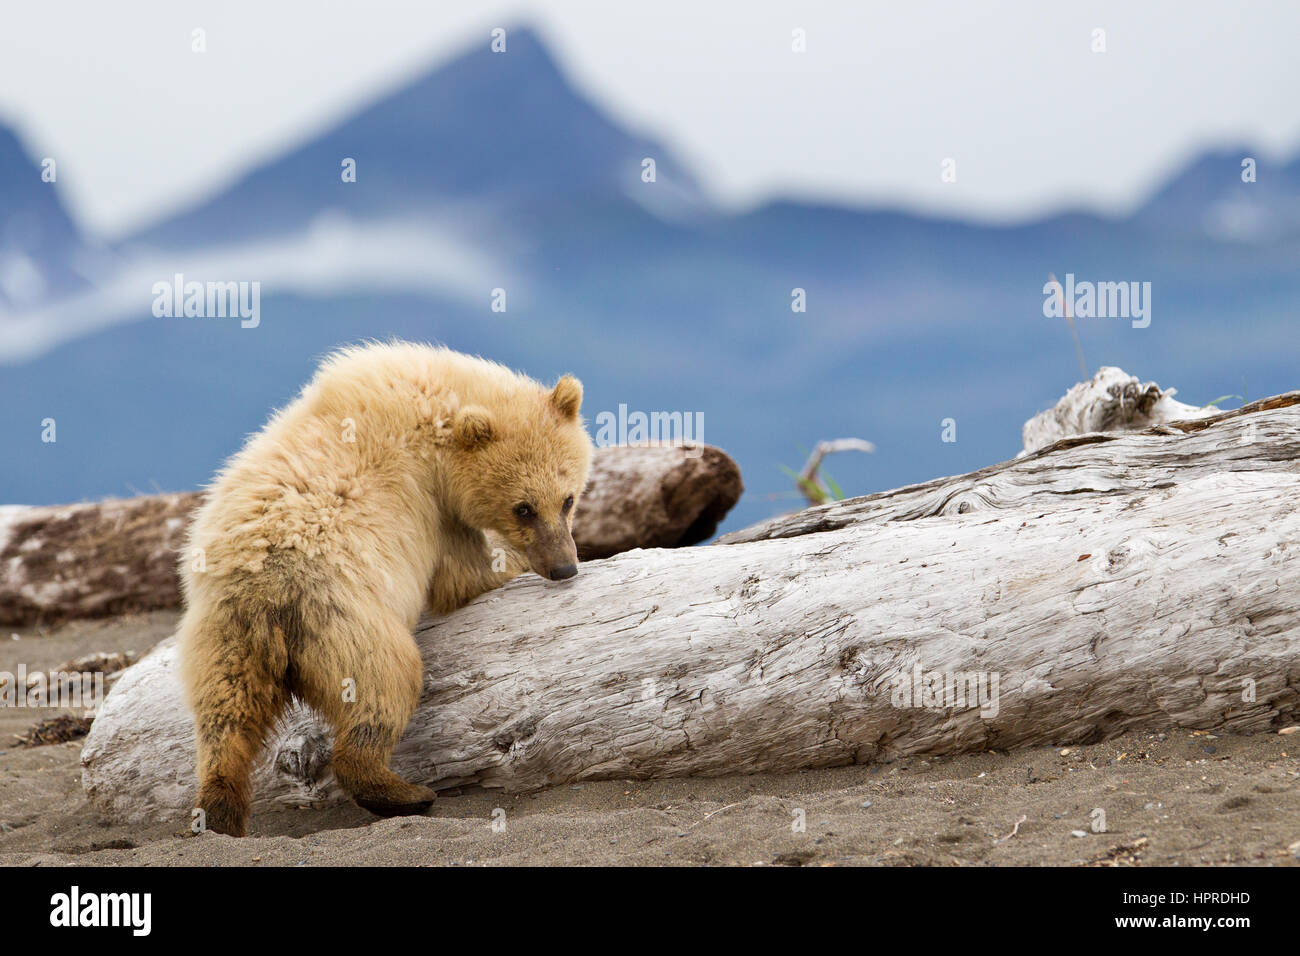 Eine junge Brown Bear Cub ist neugierig auf Touristen auf einem Bär Betrachtung Reise nach Strand Hallo Bay, Katmai Nationalpark, Alaska, Vereinigte Staaten von Amerika. Stockfoto